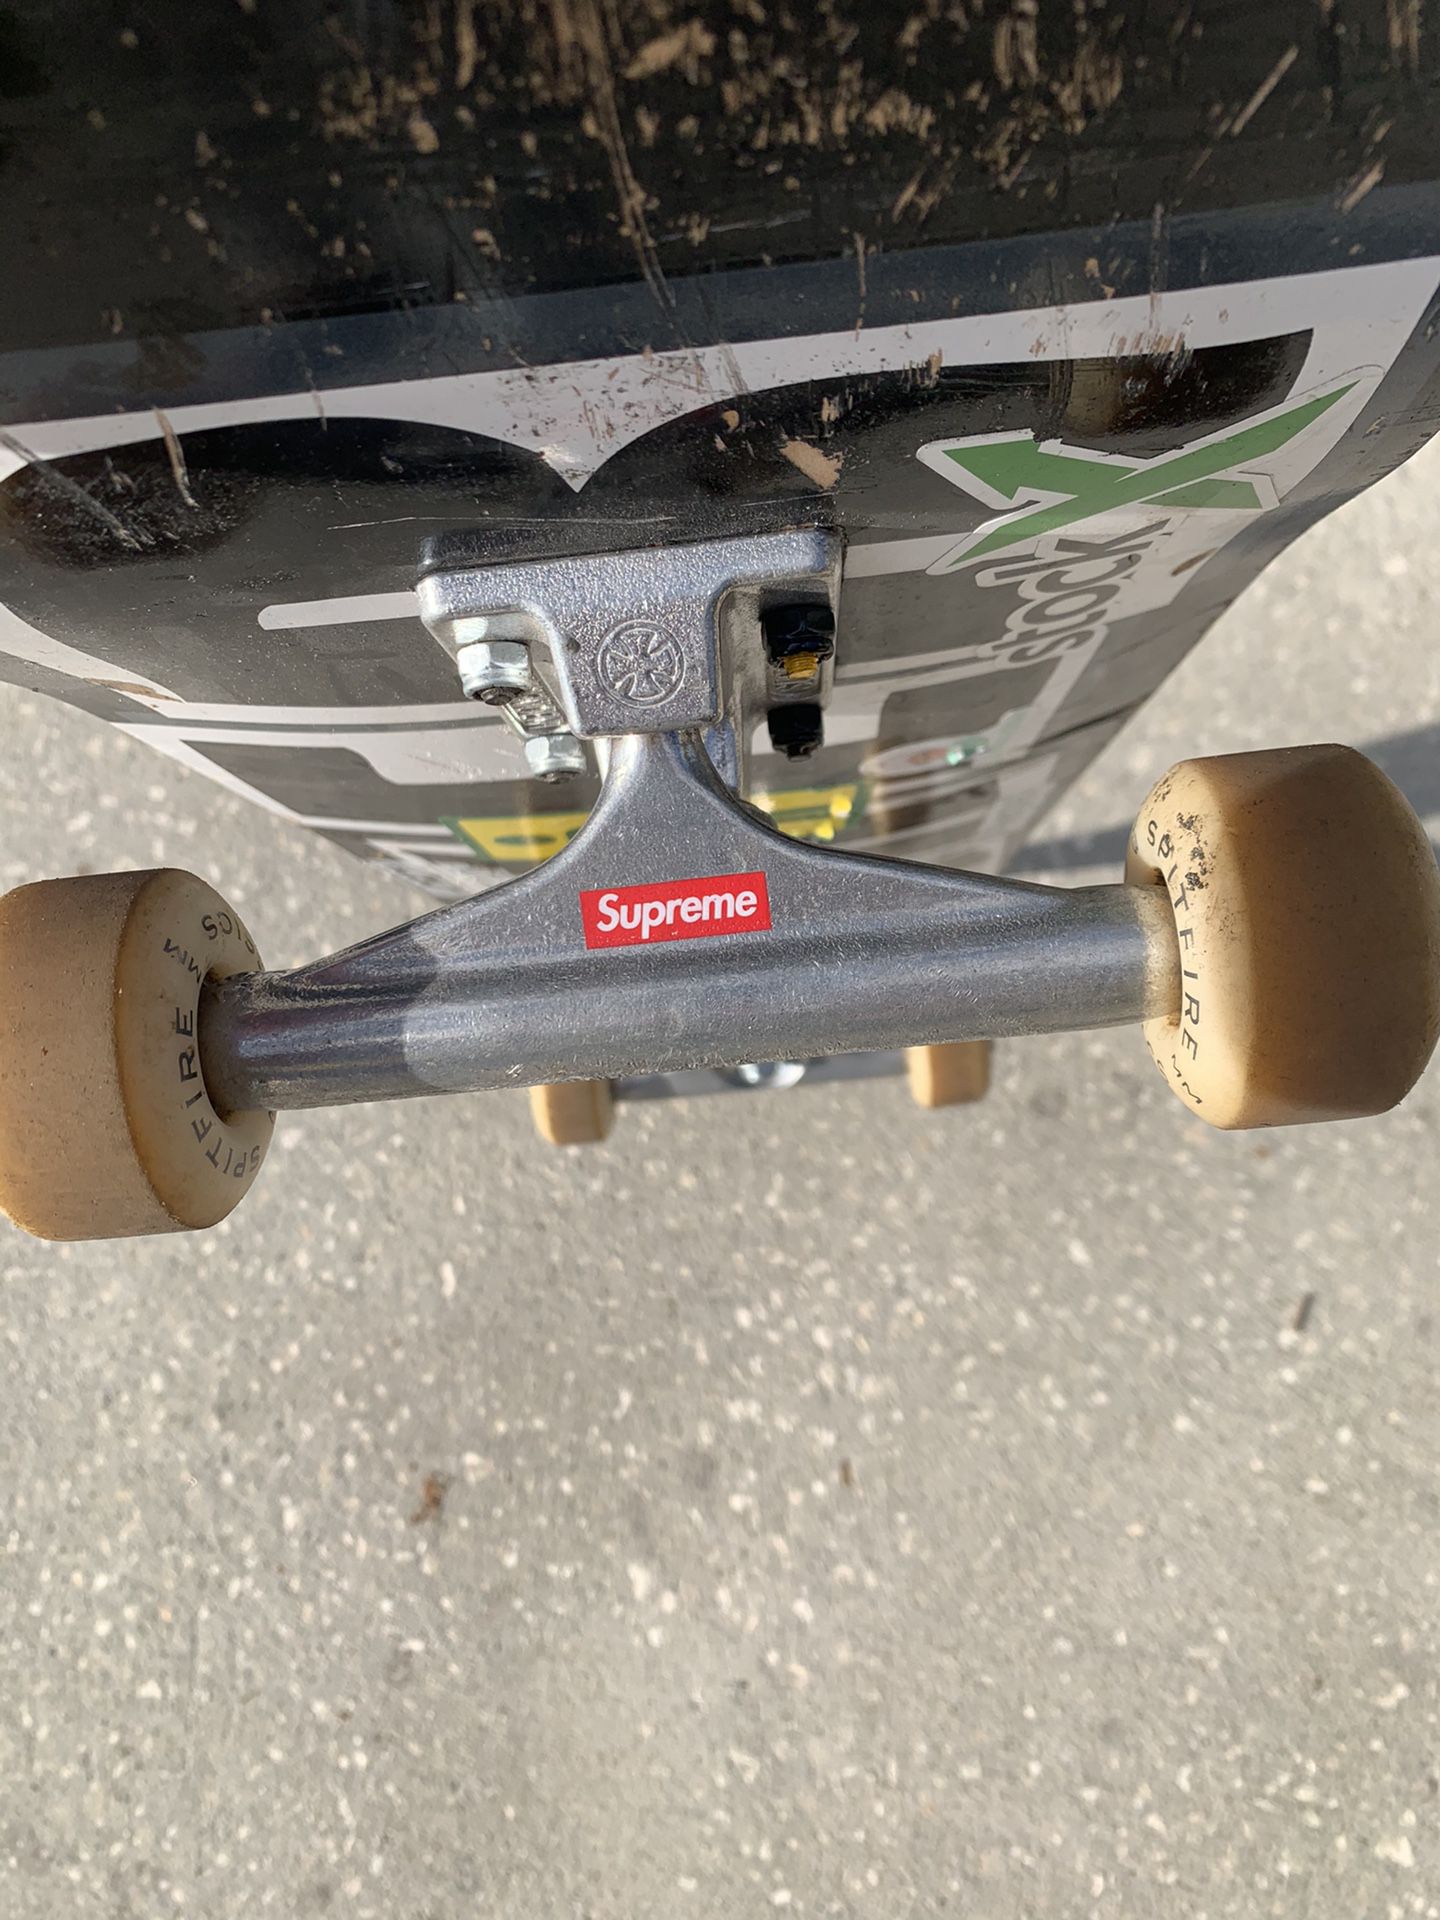 Baker Skateboard Supreme Independent Trucks Spitfire Wheels for 